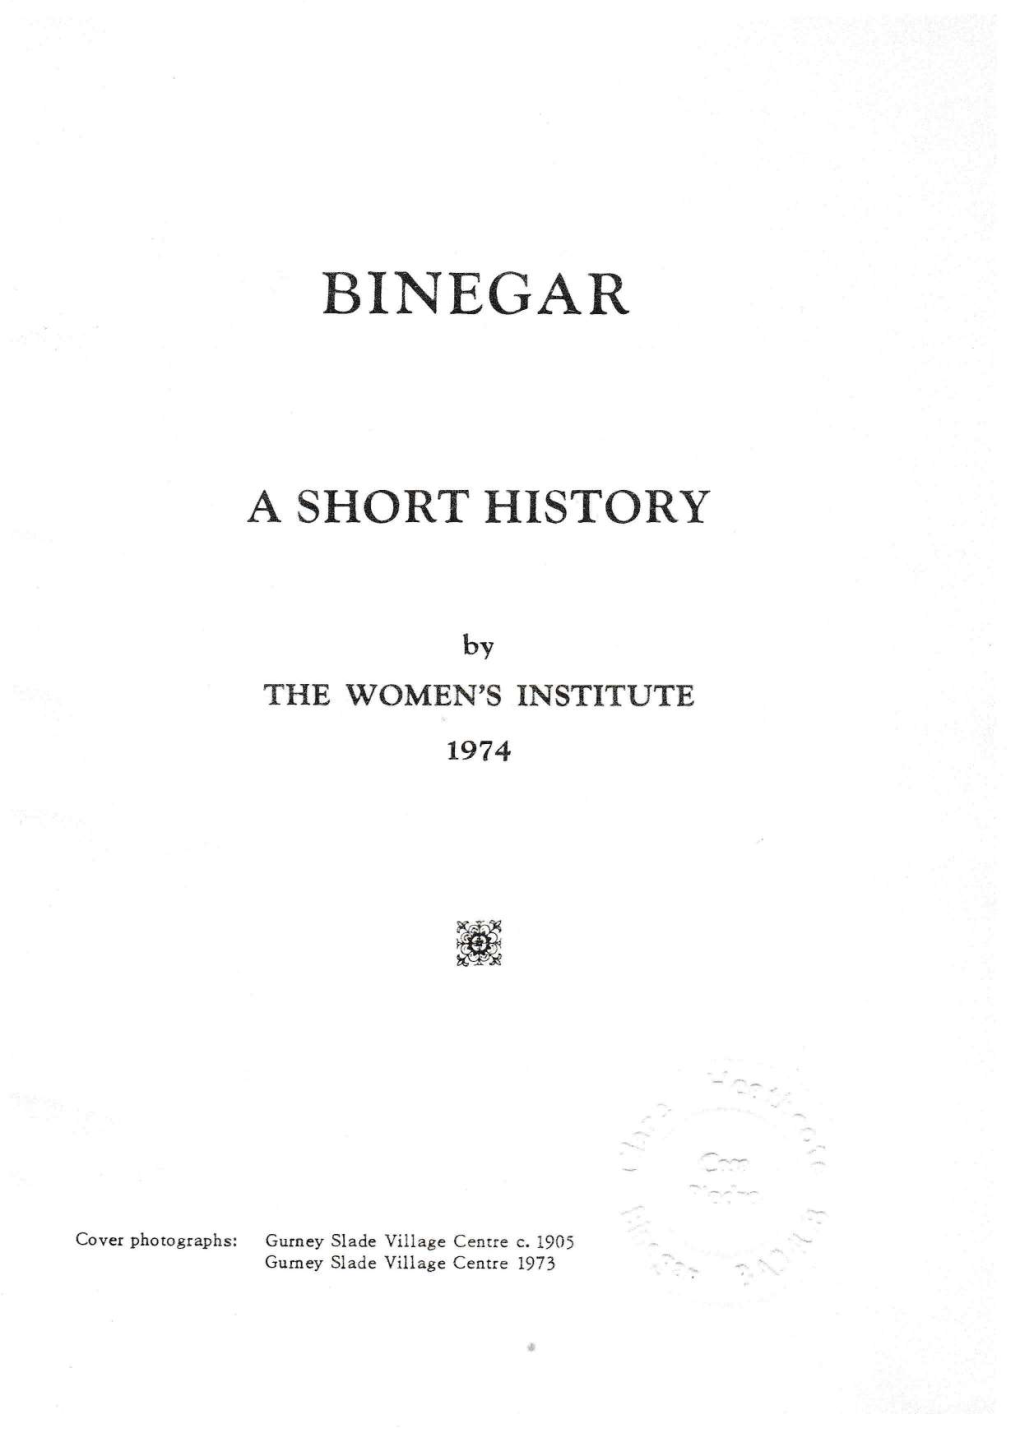 A Short History – Binegar Women's Institute, 1974